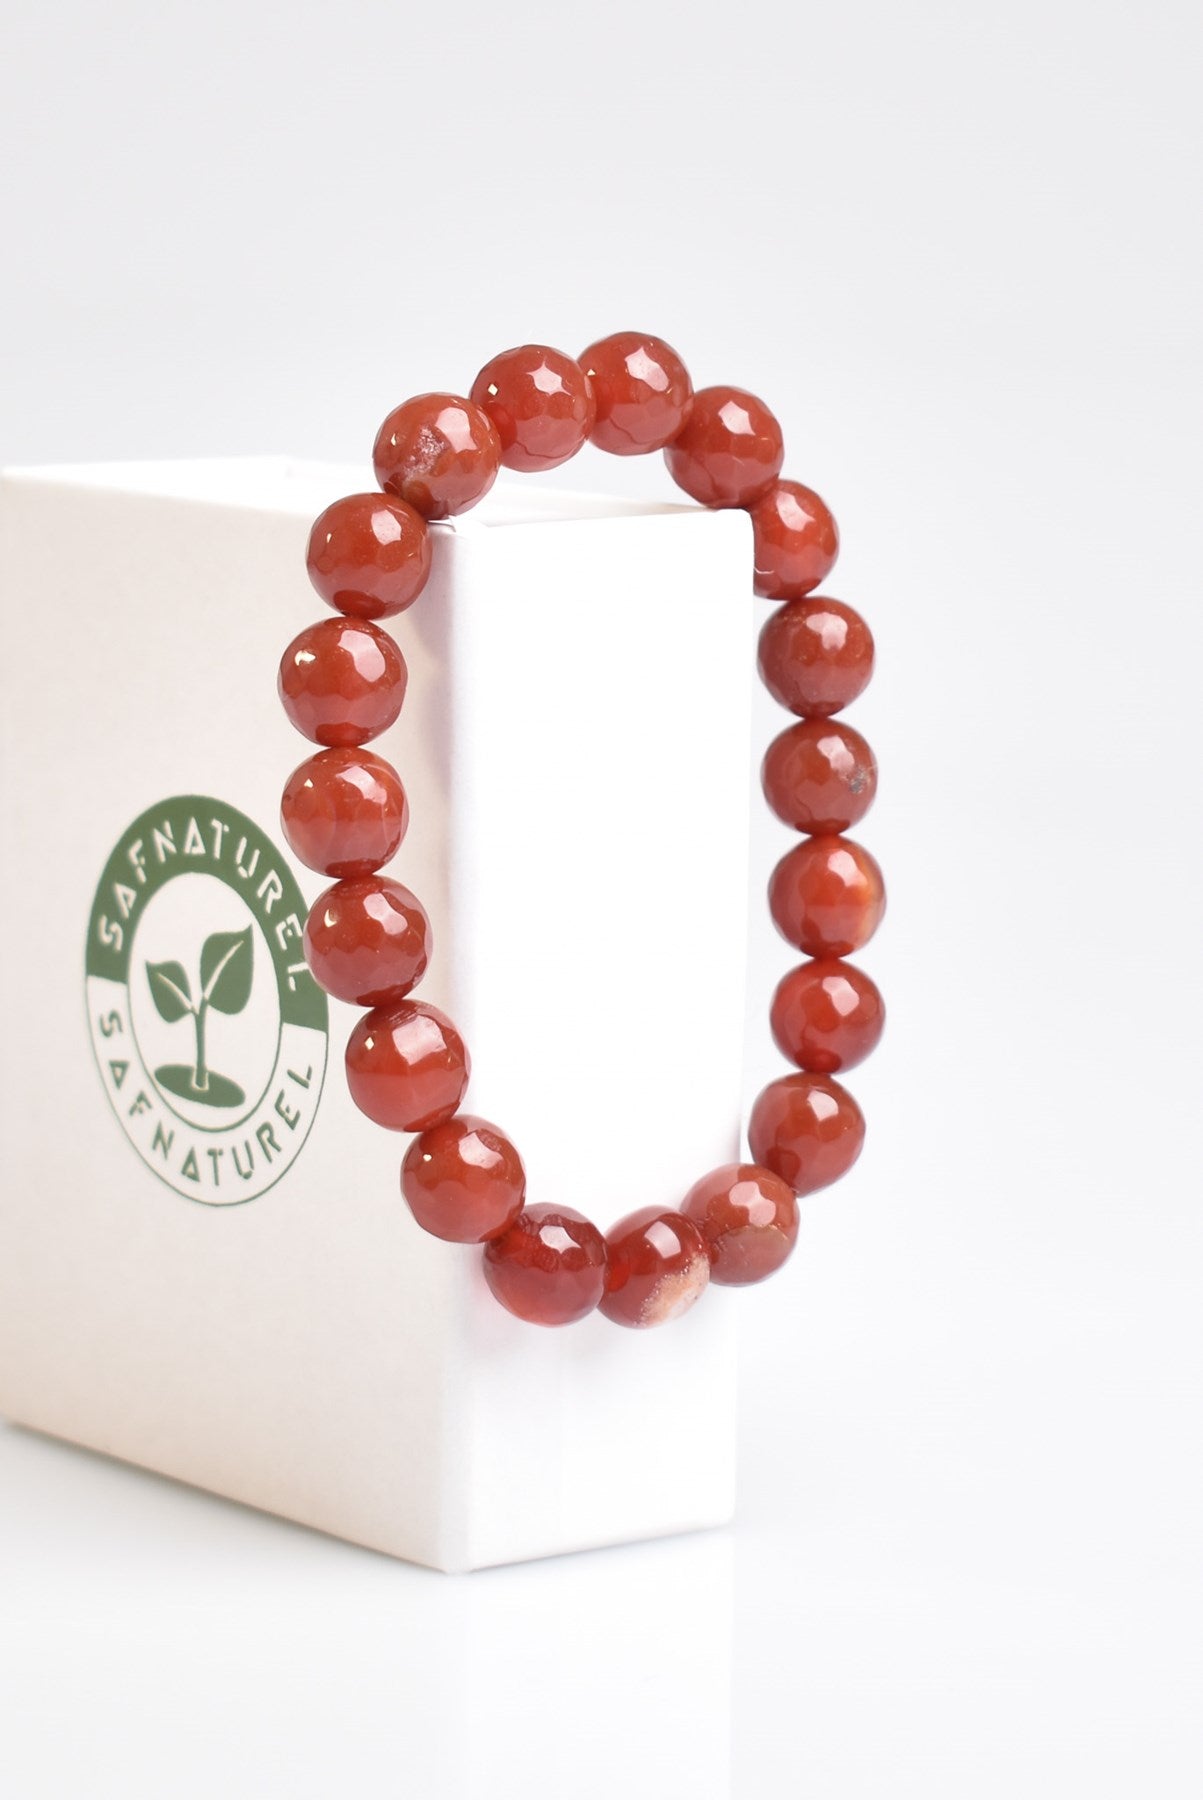 Red Agate Natural Gemstone Bracelet 10mm